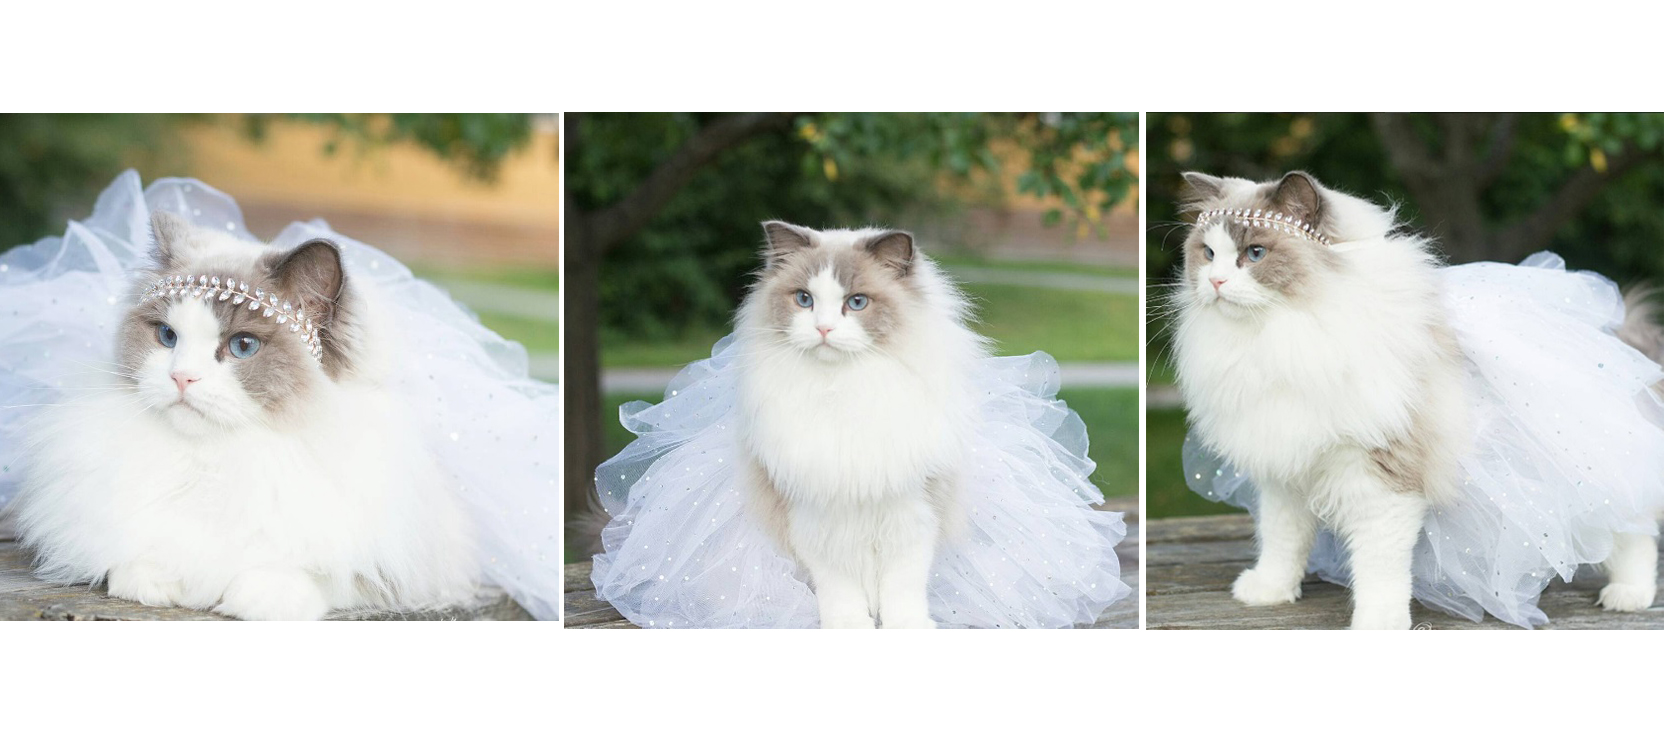 Princess Aurora es una gatita sueca que se ha convertido en toda una celebridad de las redes gracias a sus coquetas poses